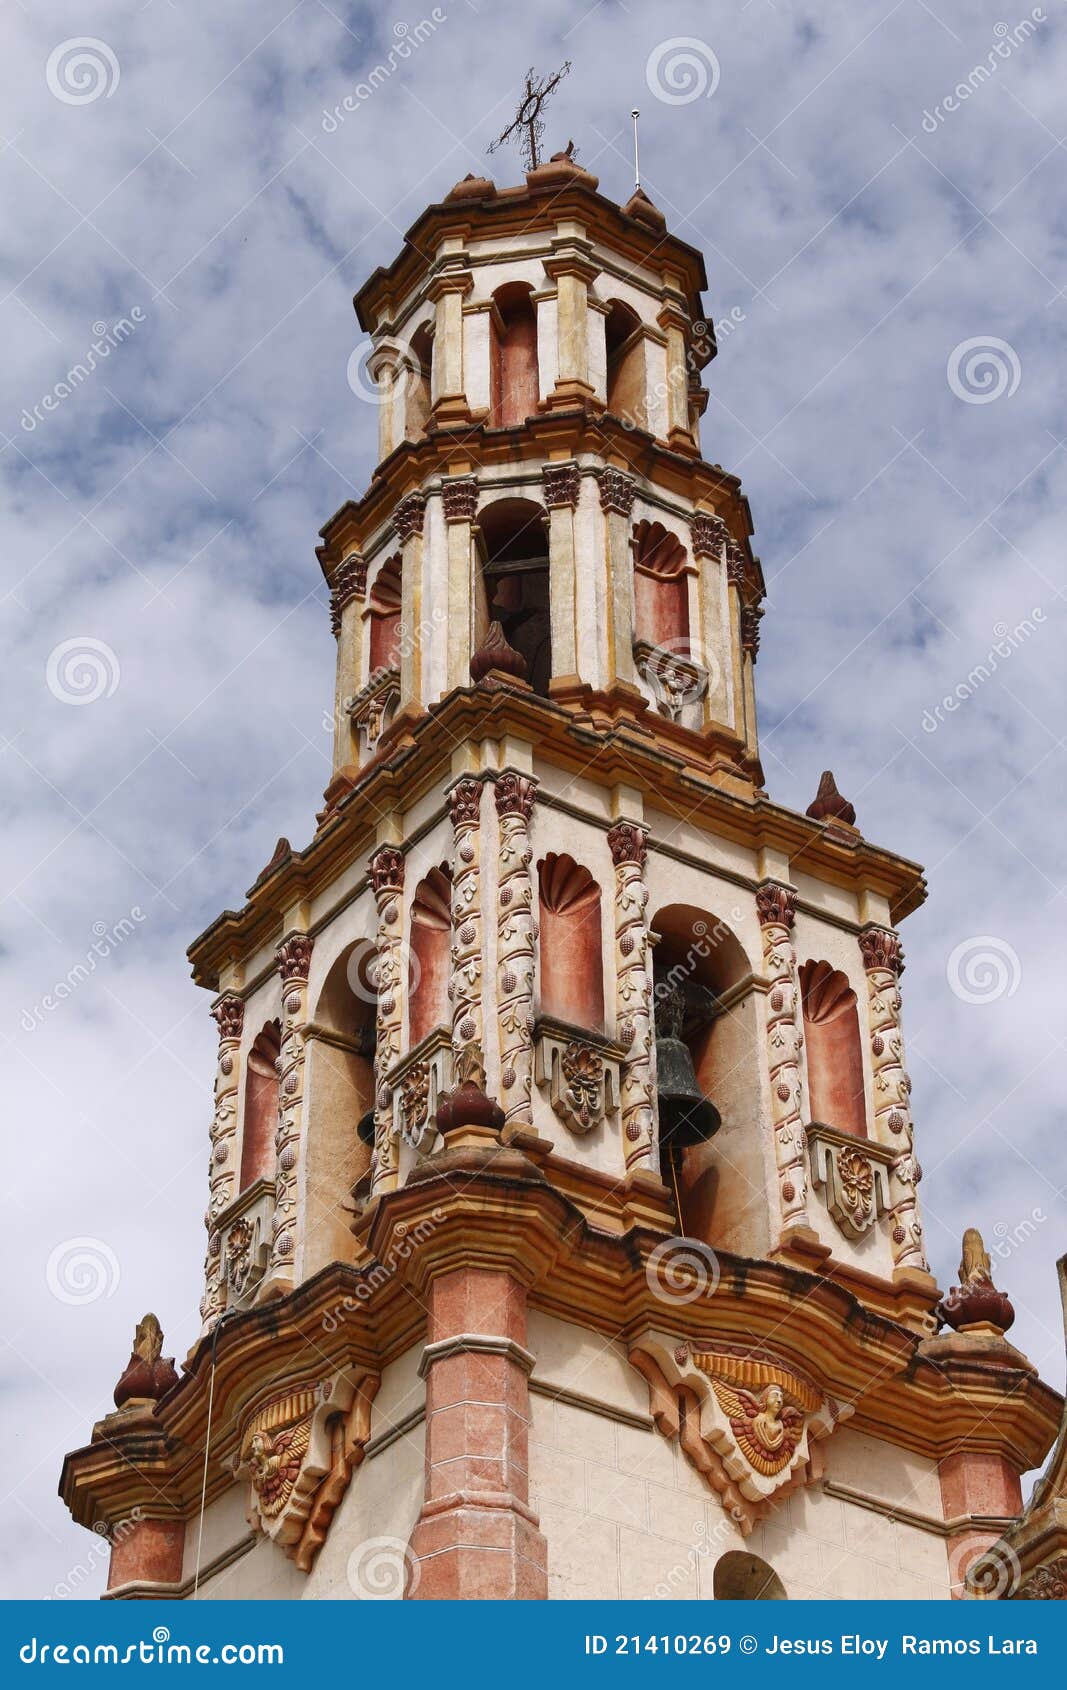 belfry in tilaco  mission near jalpan de serra in queretaro, mexico